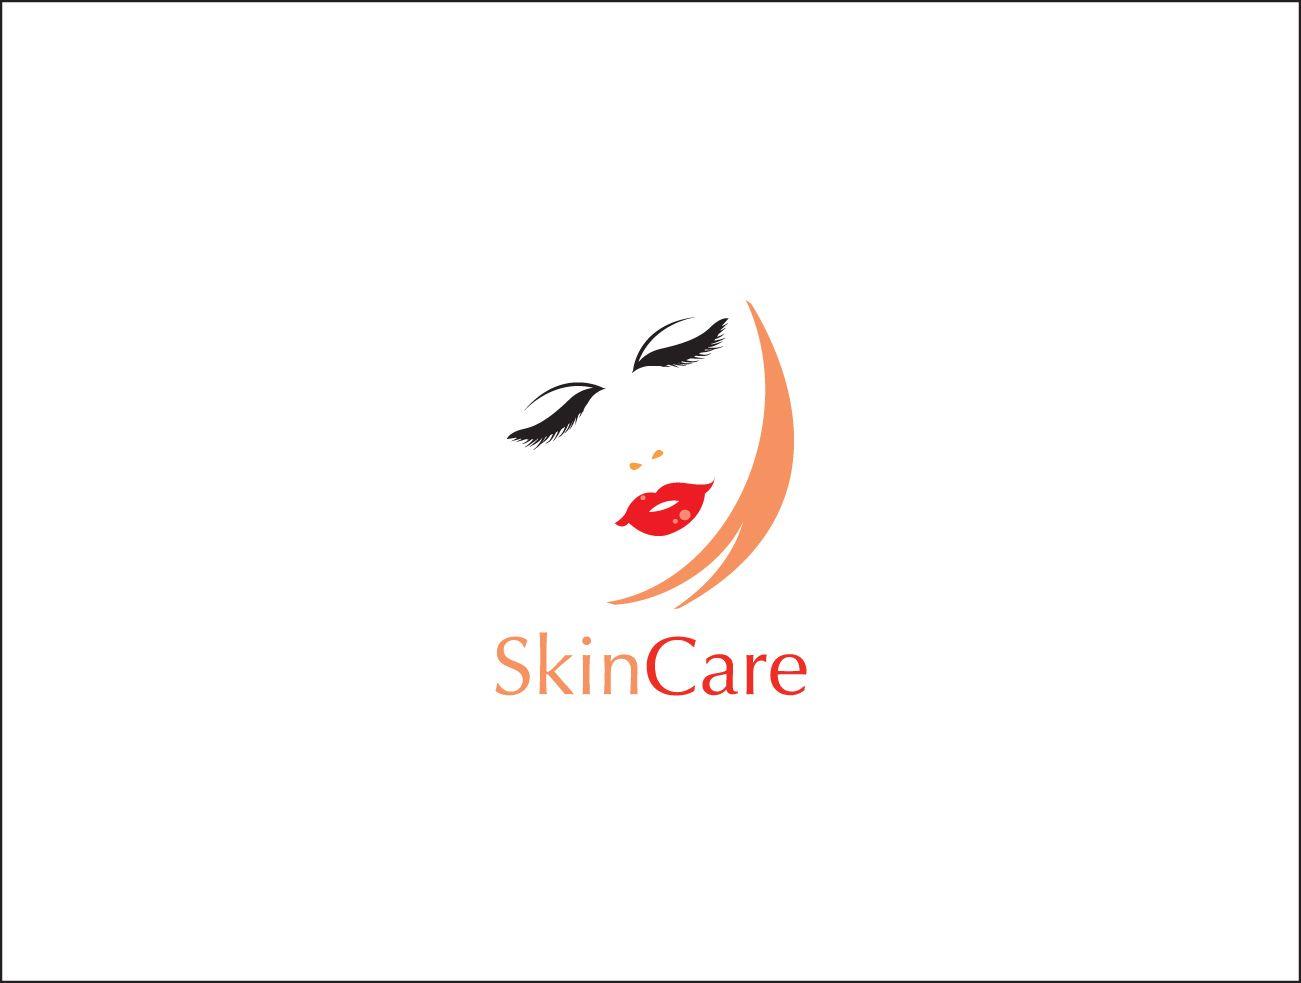 Skin Care Logo - Elegant, Playful, Skin Care Product Logo Design for Skin Care